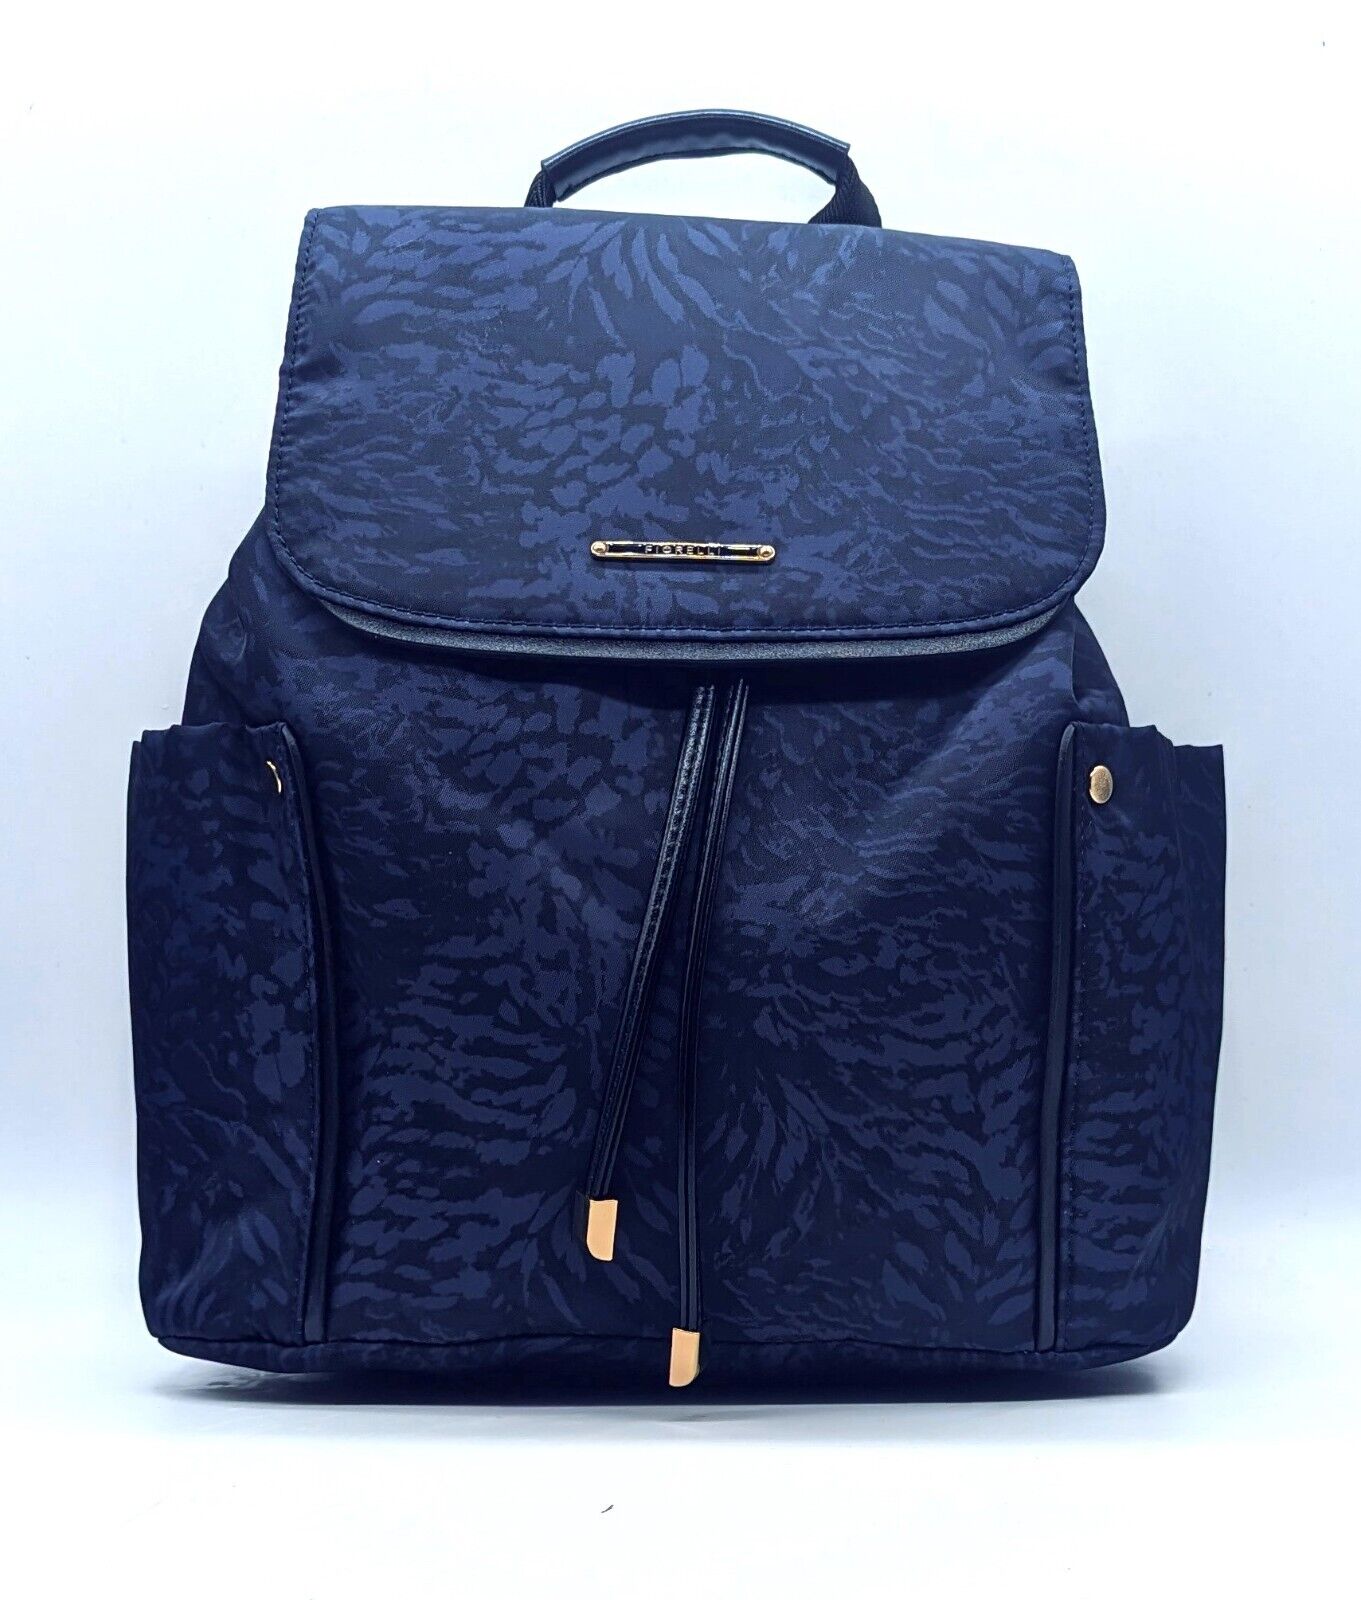 Fiorelli eloise theseus backpack